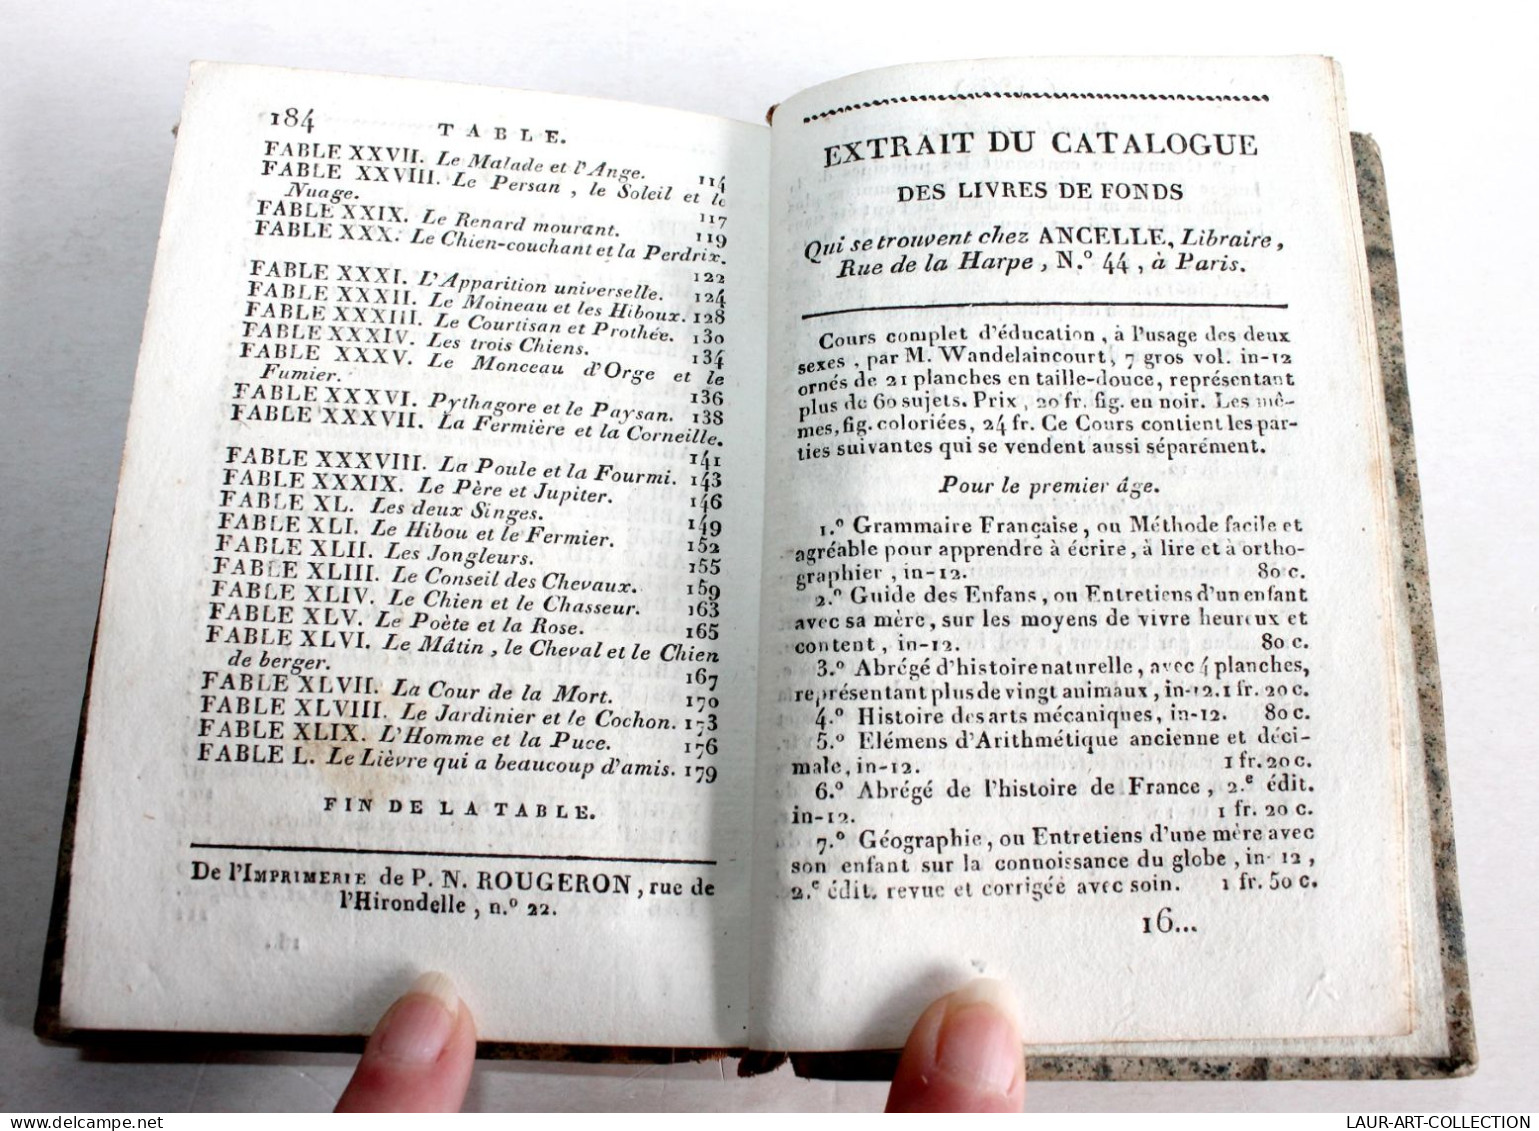 FABLES DE GAY, TRADUITES EN VERS FRANCAIS AVEC GRAVURES 1811 ANCELLE LIBRAIRE / ANCIEN LIVRE XIXe SIECLE (1803.131) - Franse Schrijvers